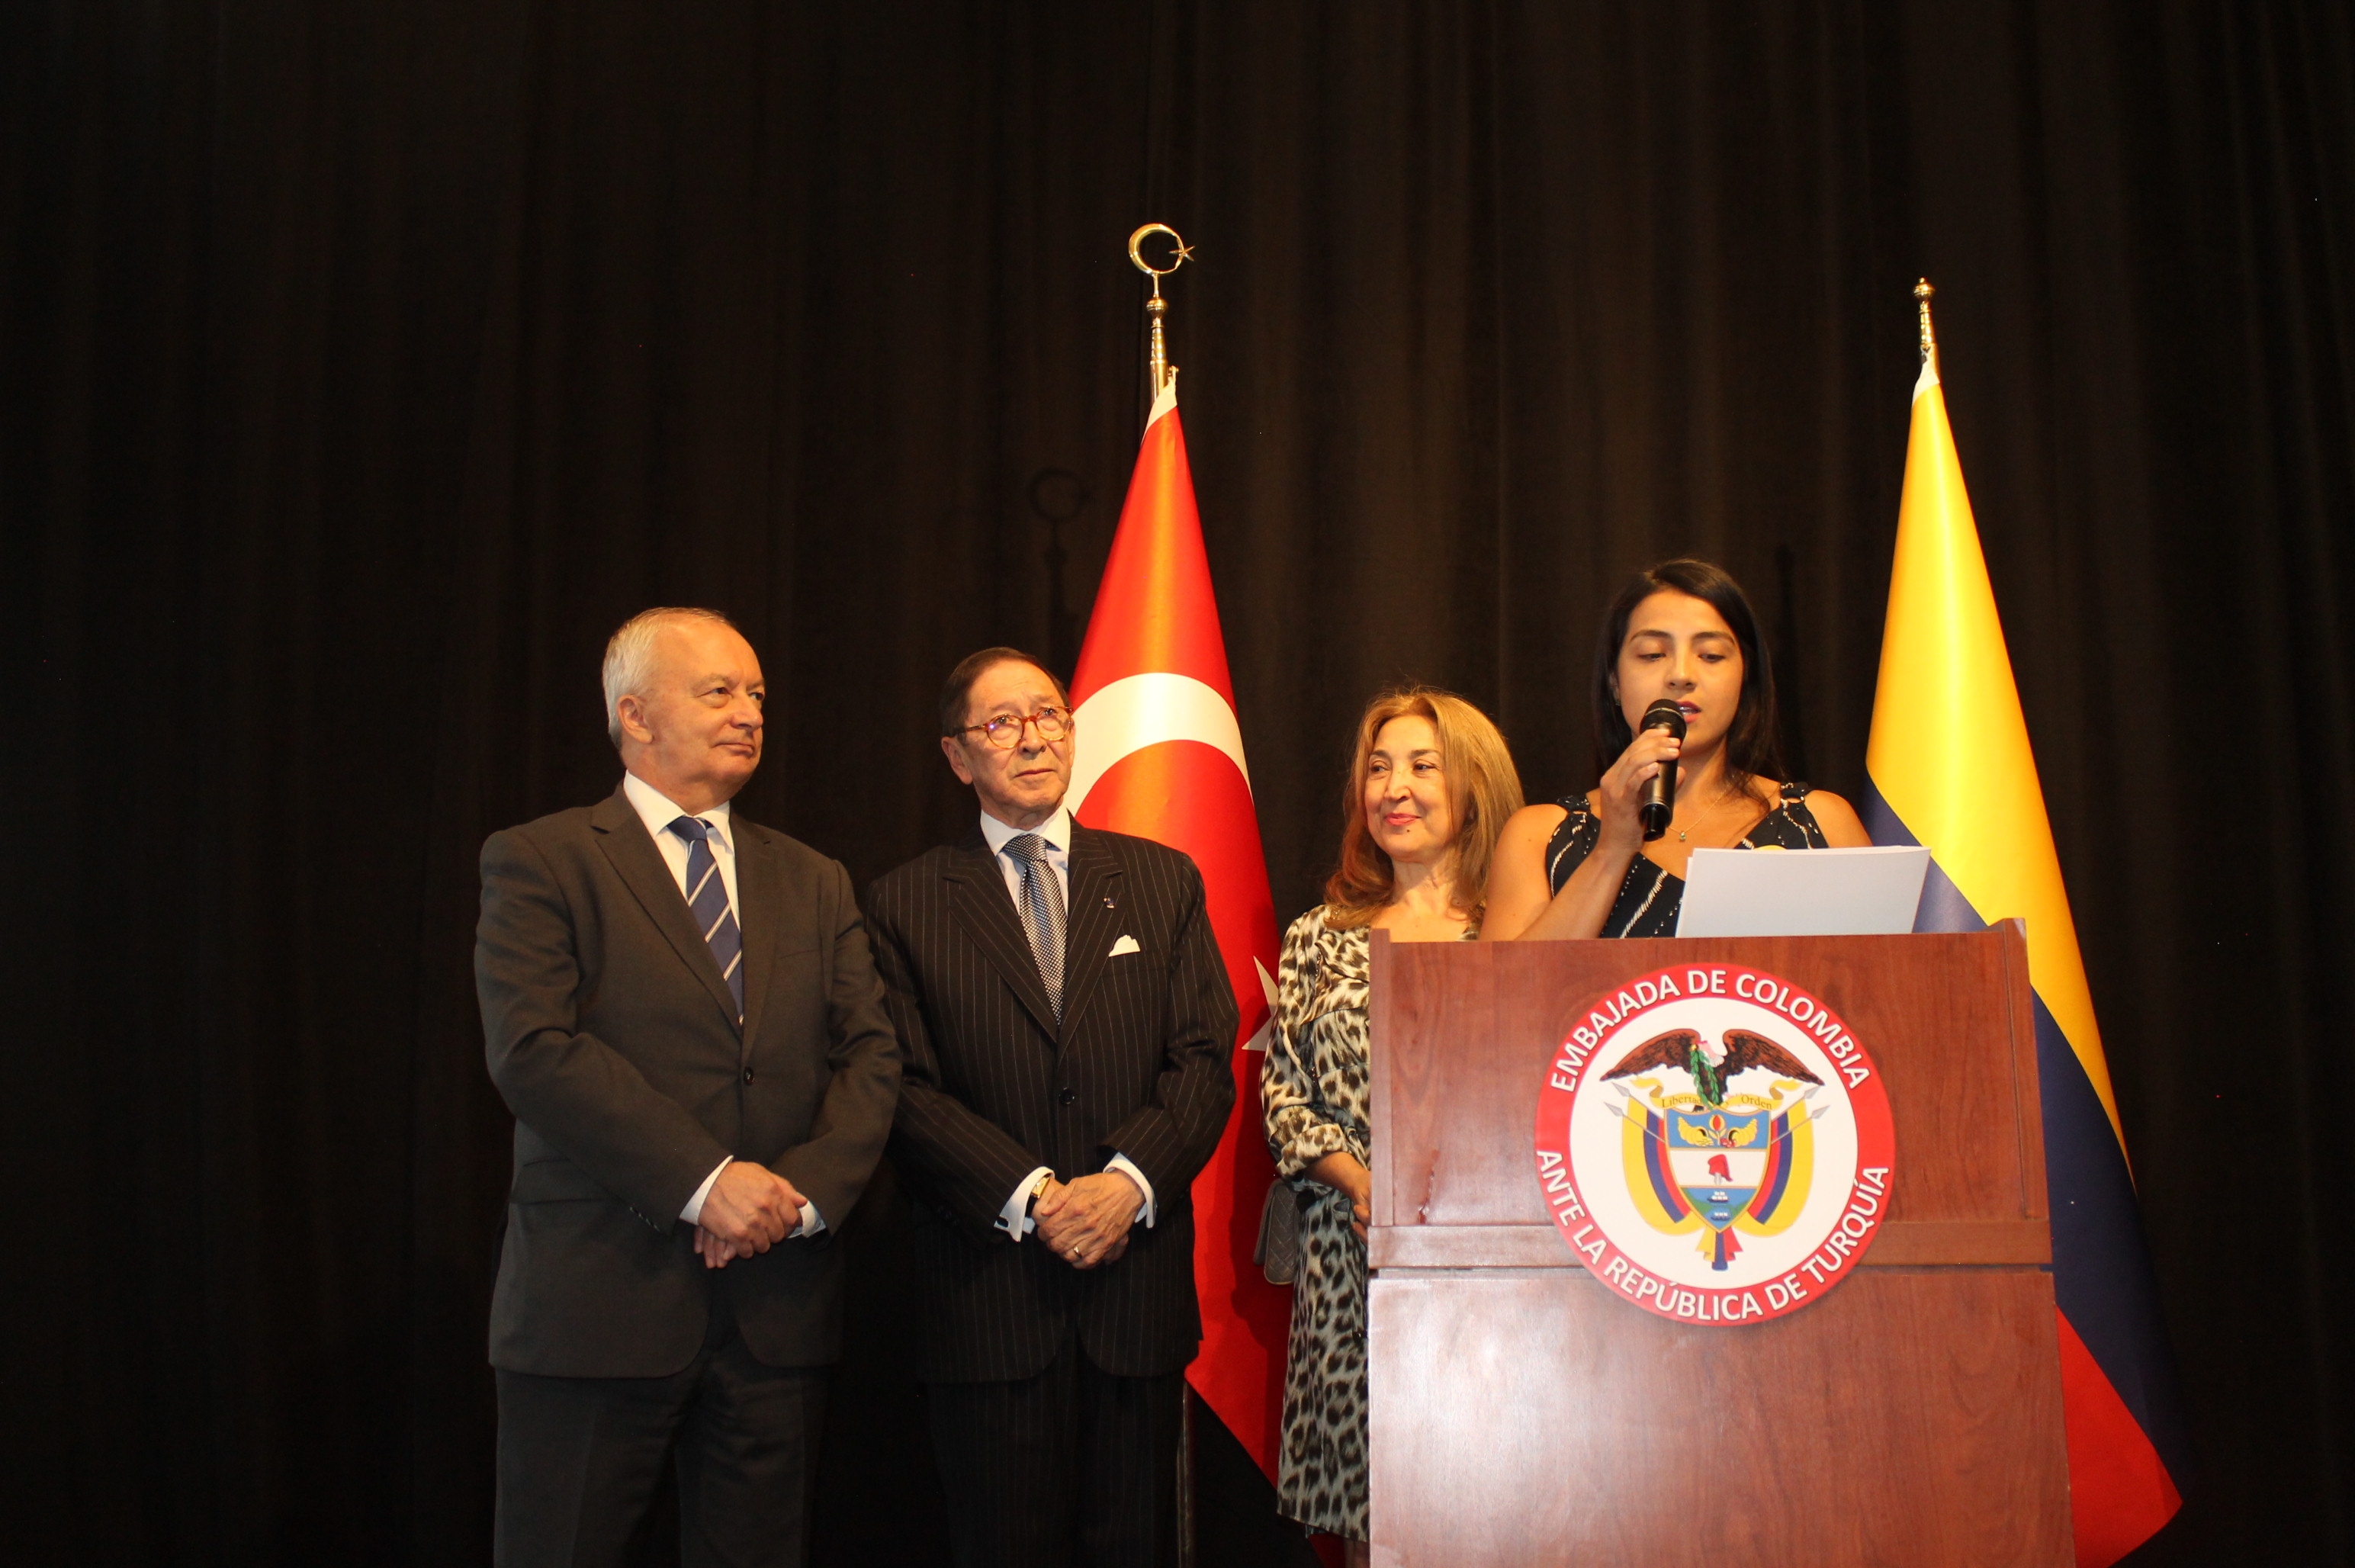 Embajada conmemoró el Bicentenario de la Independencia de Colombia y la torre insignia de Turquía, Atakule, relució con el amarillo, azul y rojo